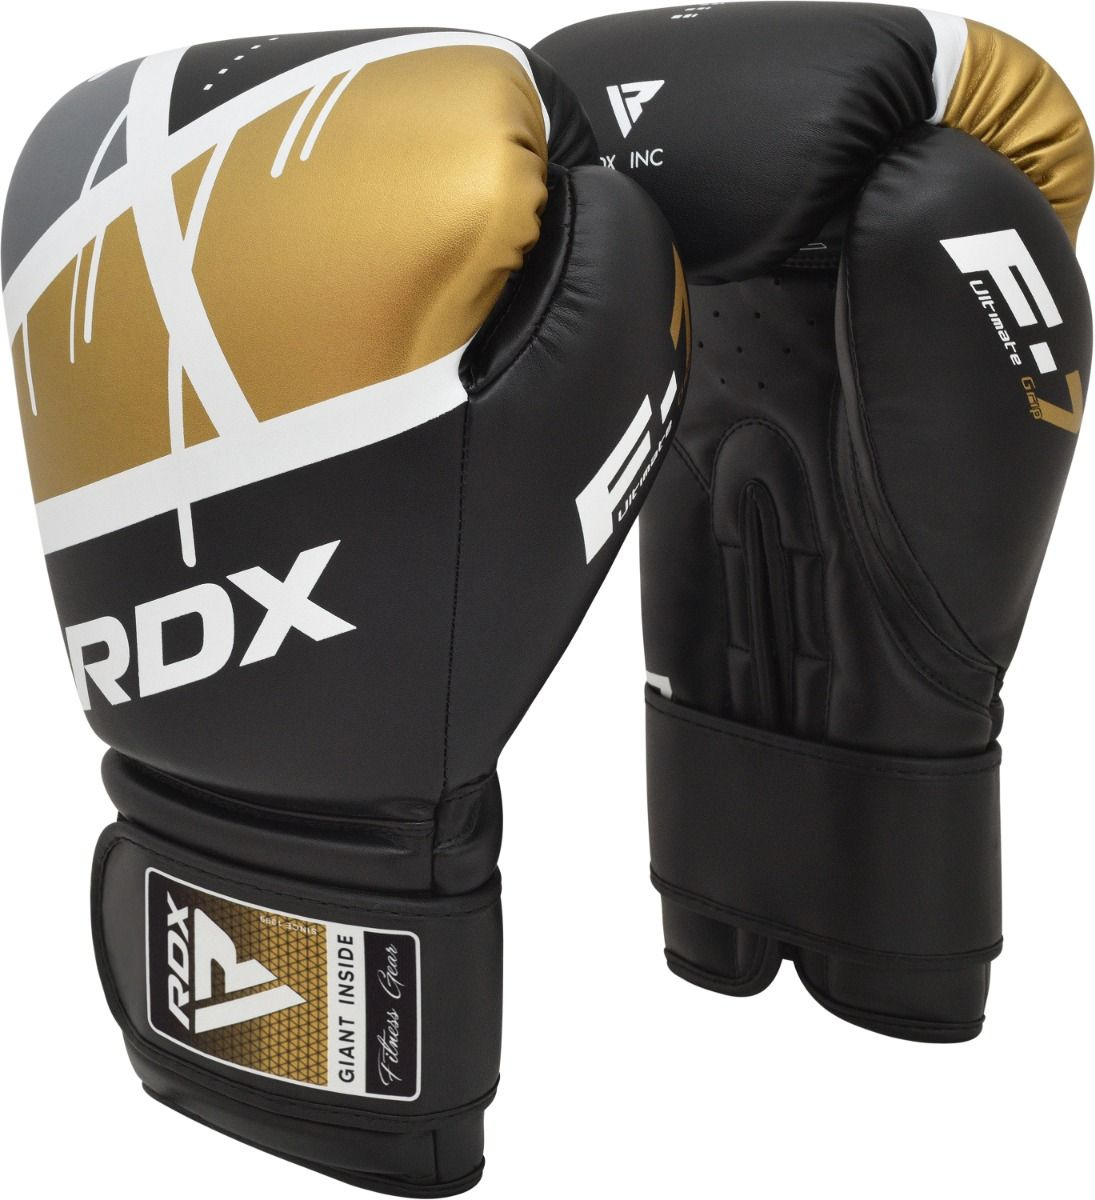 Boxerské rukavice RDX F7 black/golden vel. 14 oz